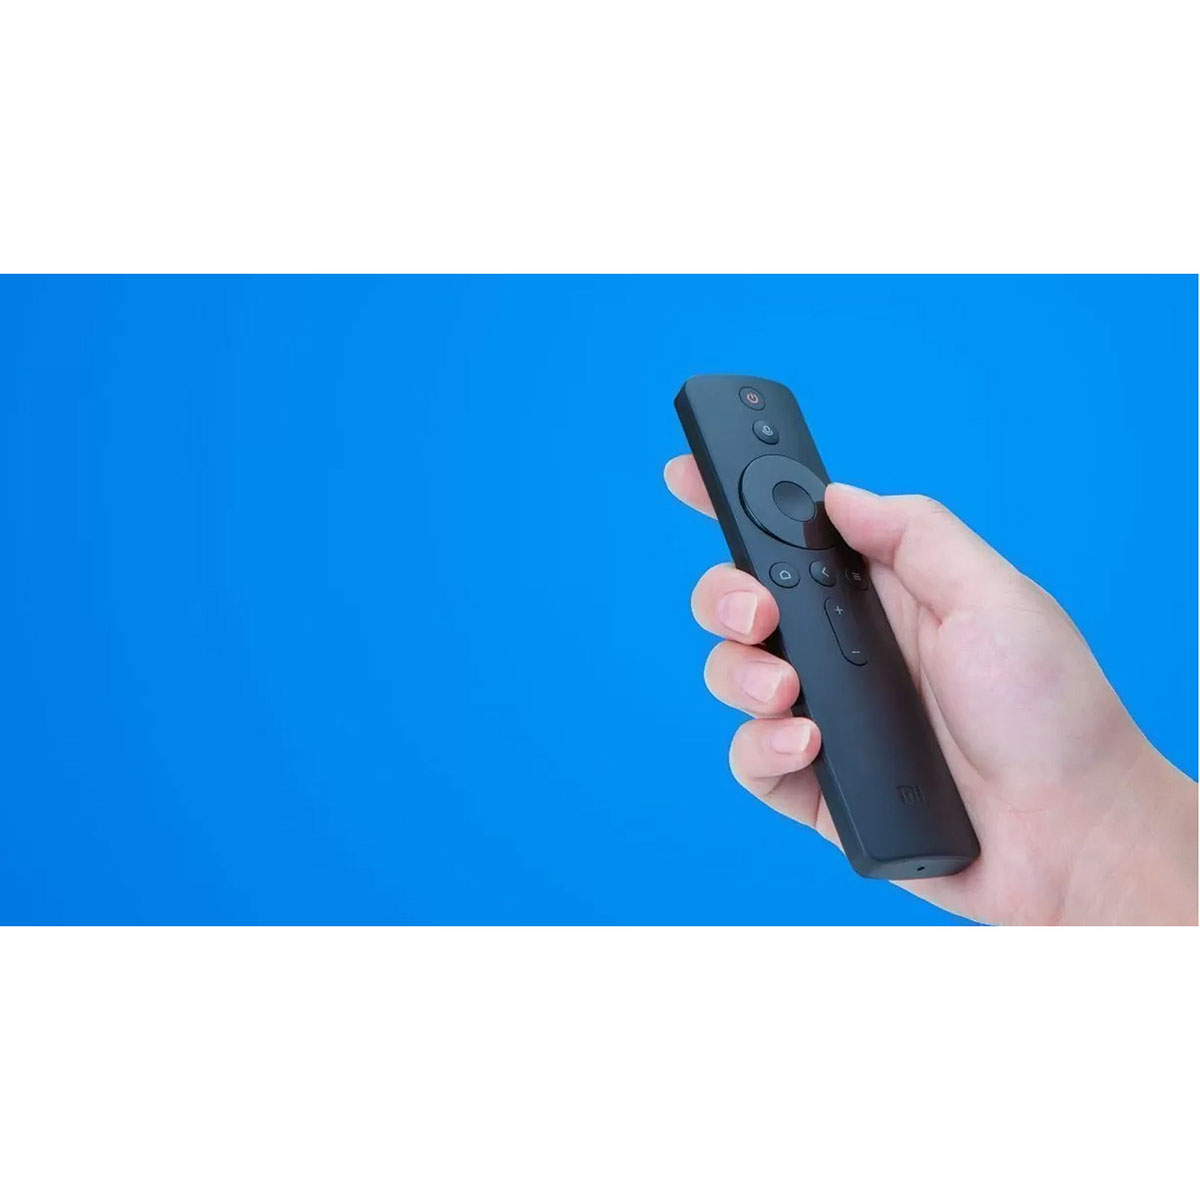 Пульт ДУ для XIAOMI Mi Bluetooth Touch Voice Remote Control с голосовым контроллером, цвет черный.